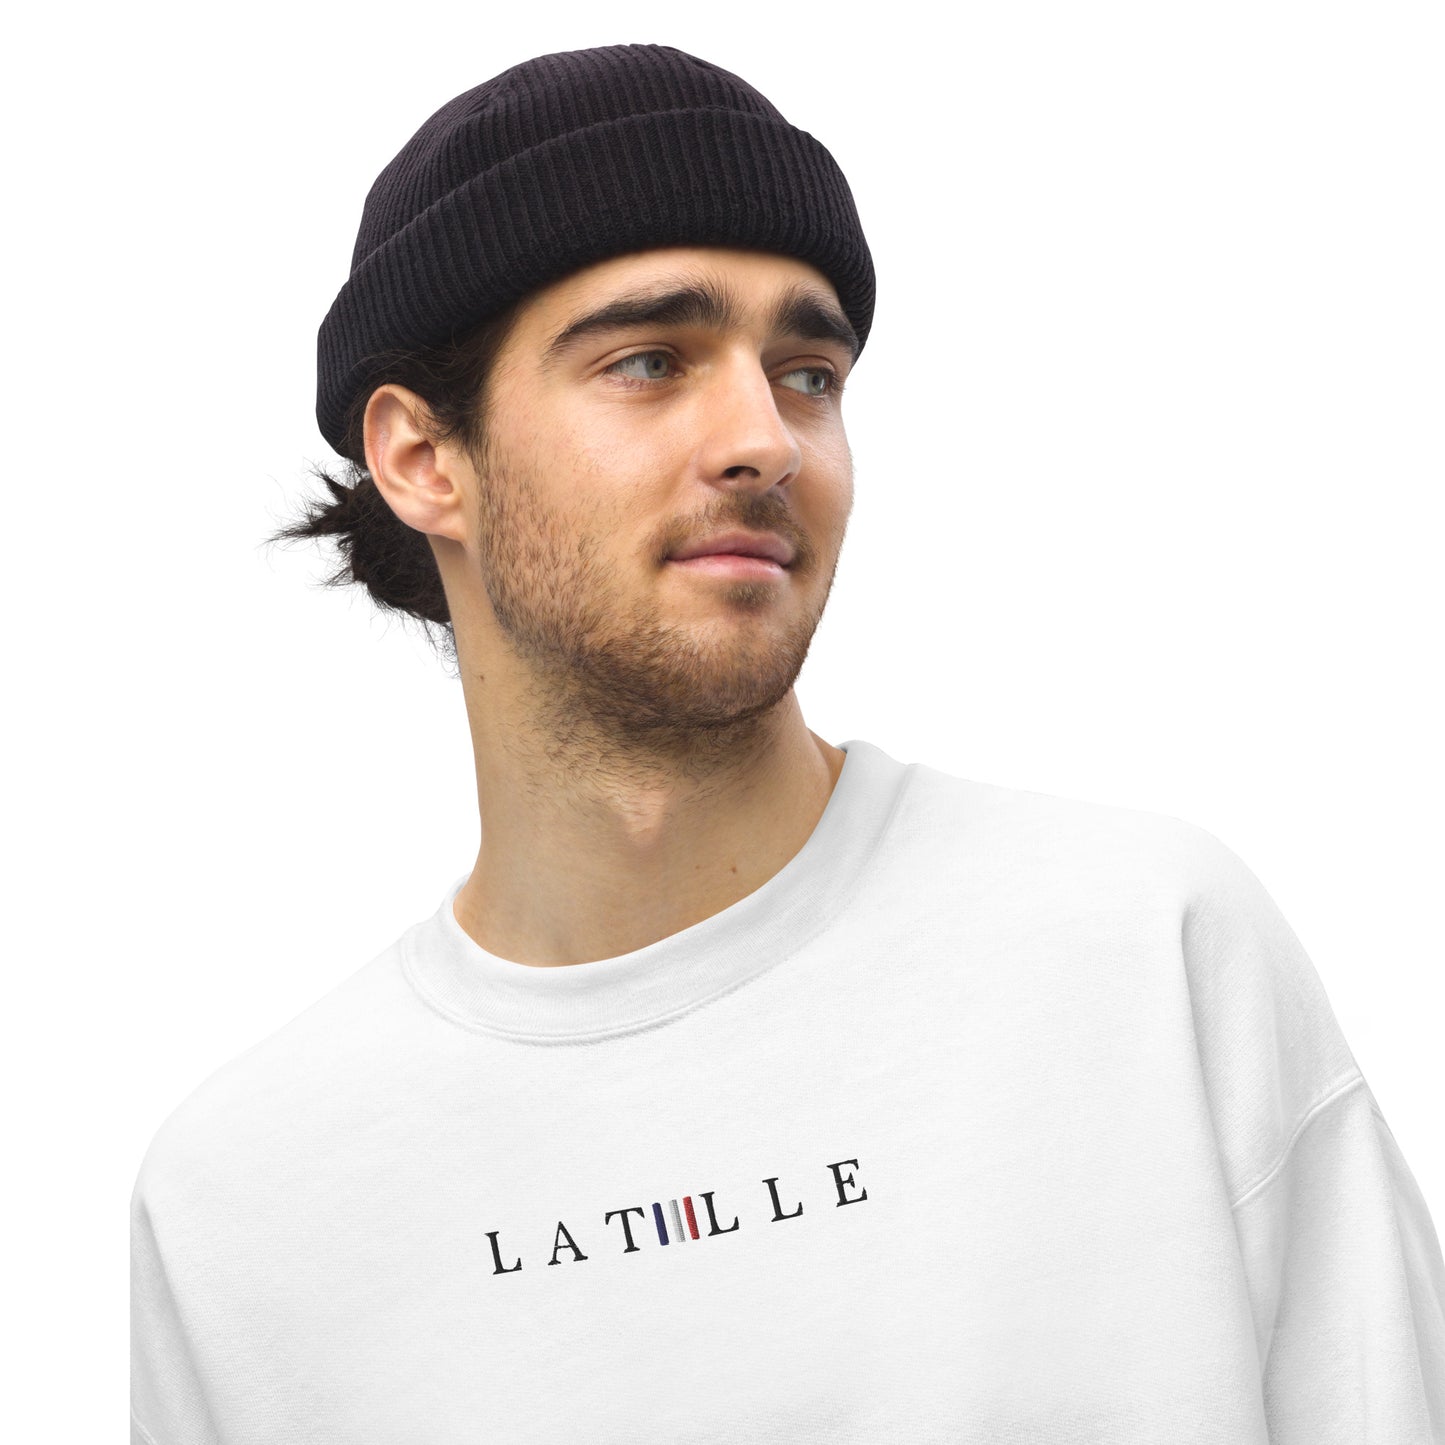 Latelle 2.0 | Loose Sweatshirt | Herr